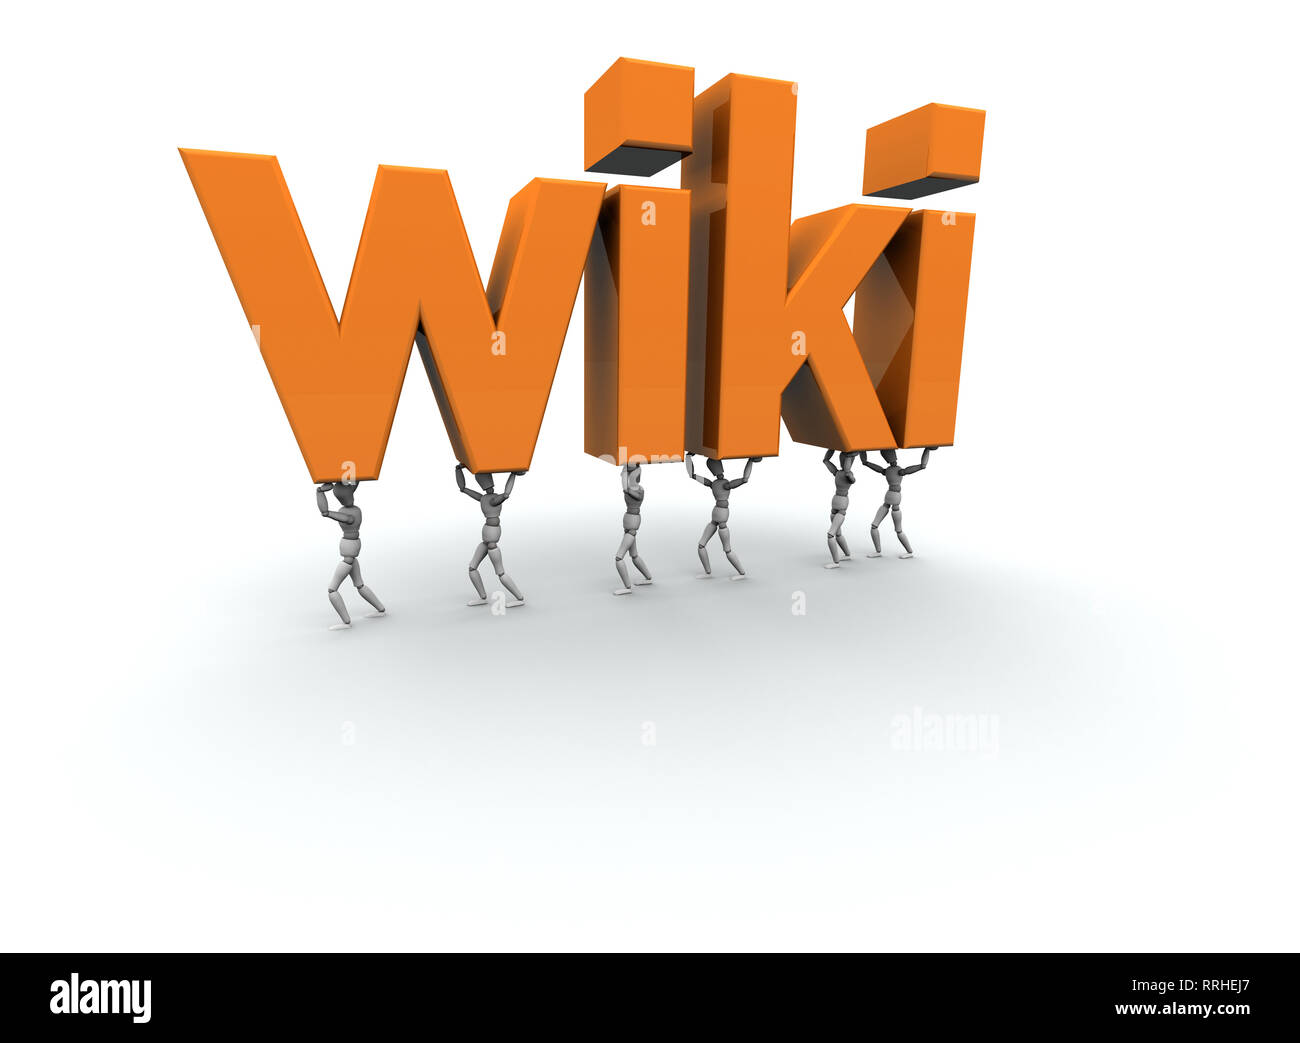 Mannequins 3D portant le mot 'Wiki' en orange. Banque D'Images